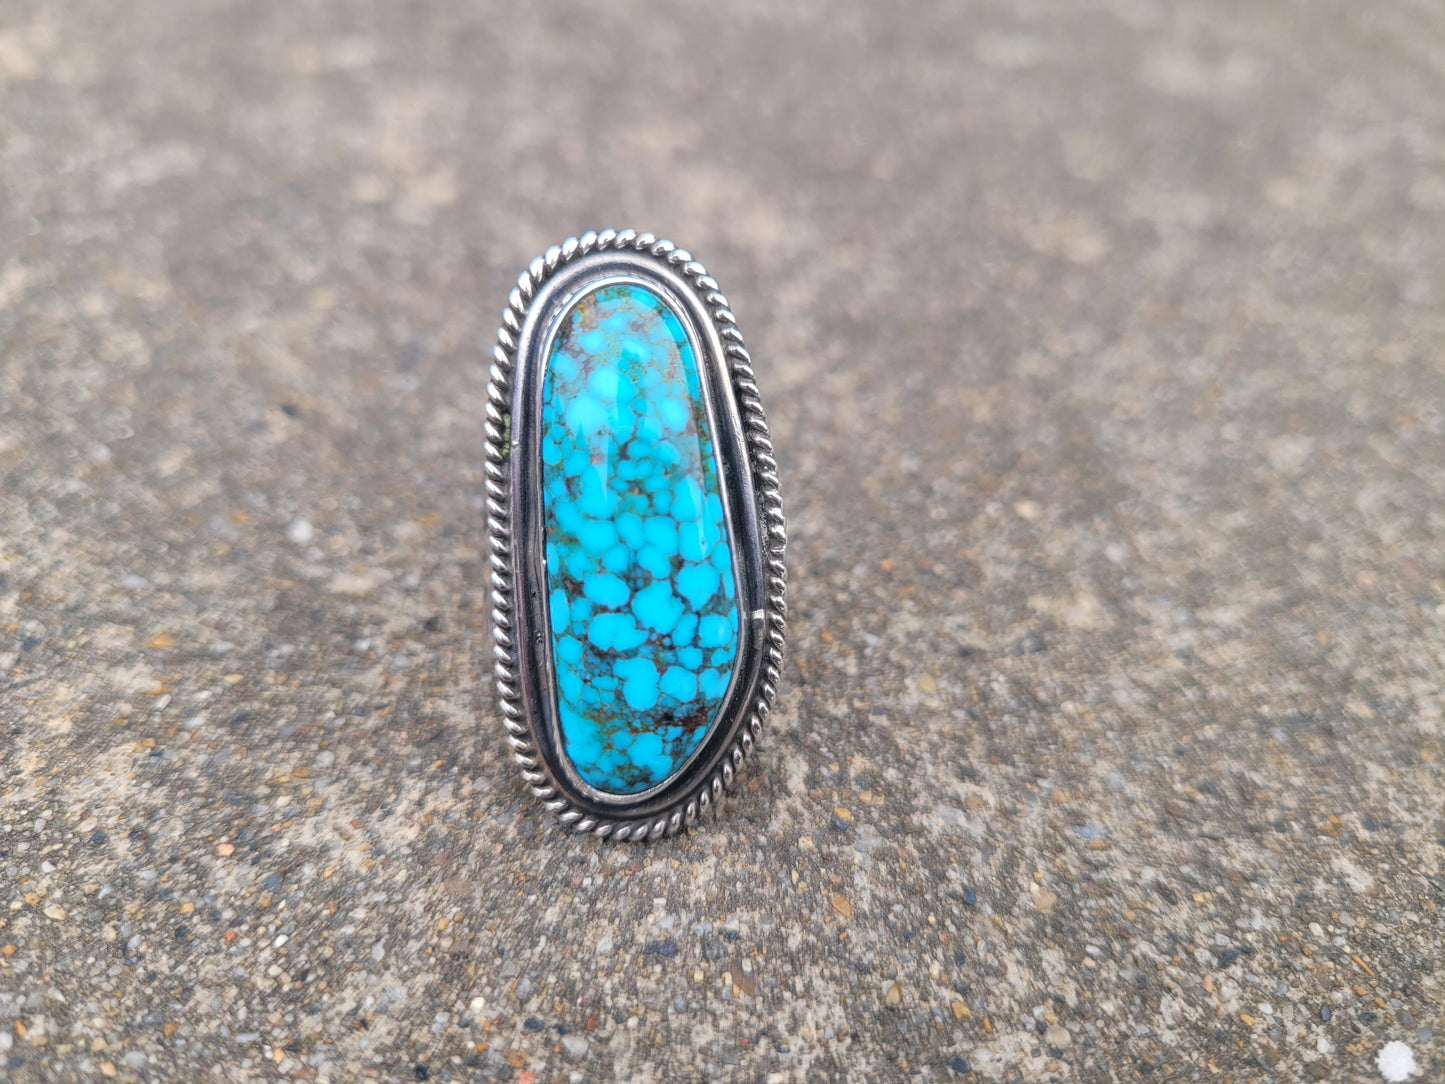 High grade Kingman turquoise ring size 6.75